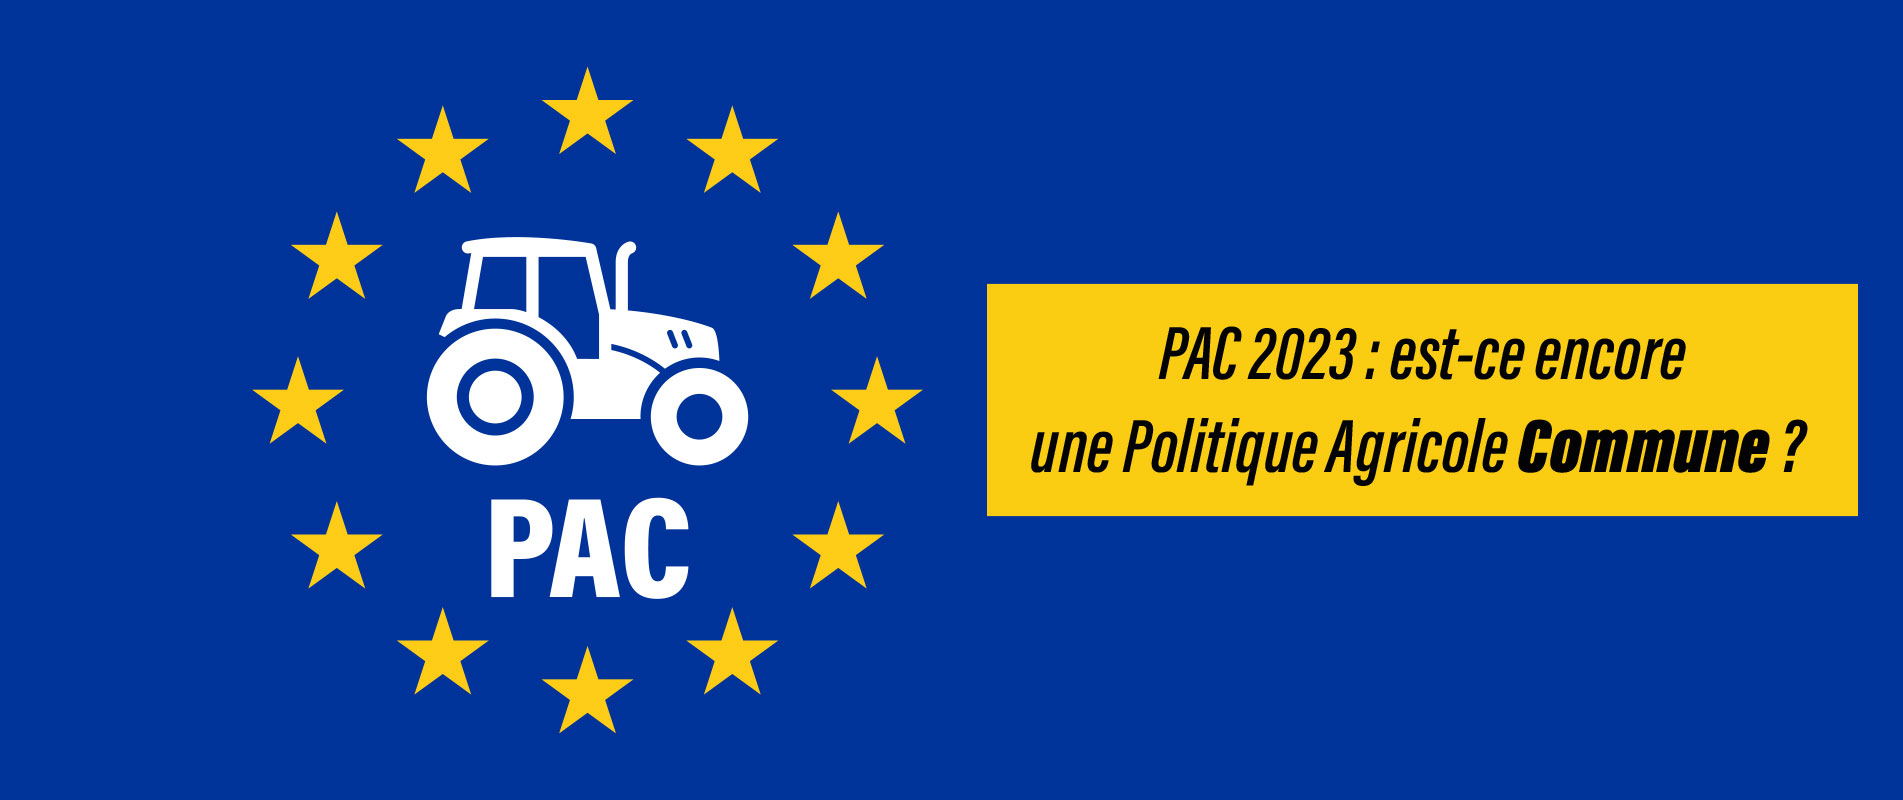 PAC 2023 : Est-ce encore une Politique Agricole Commune ?